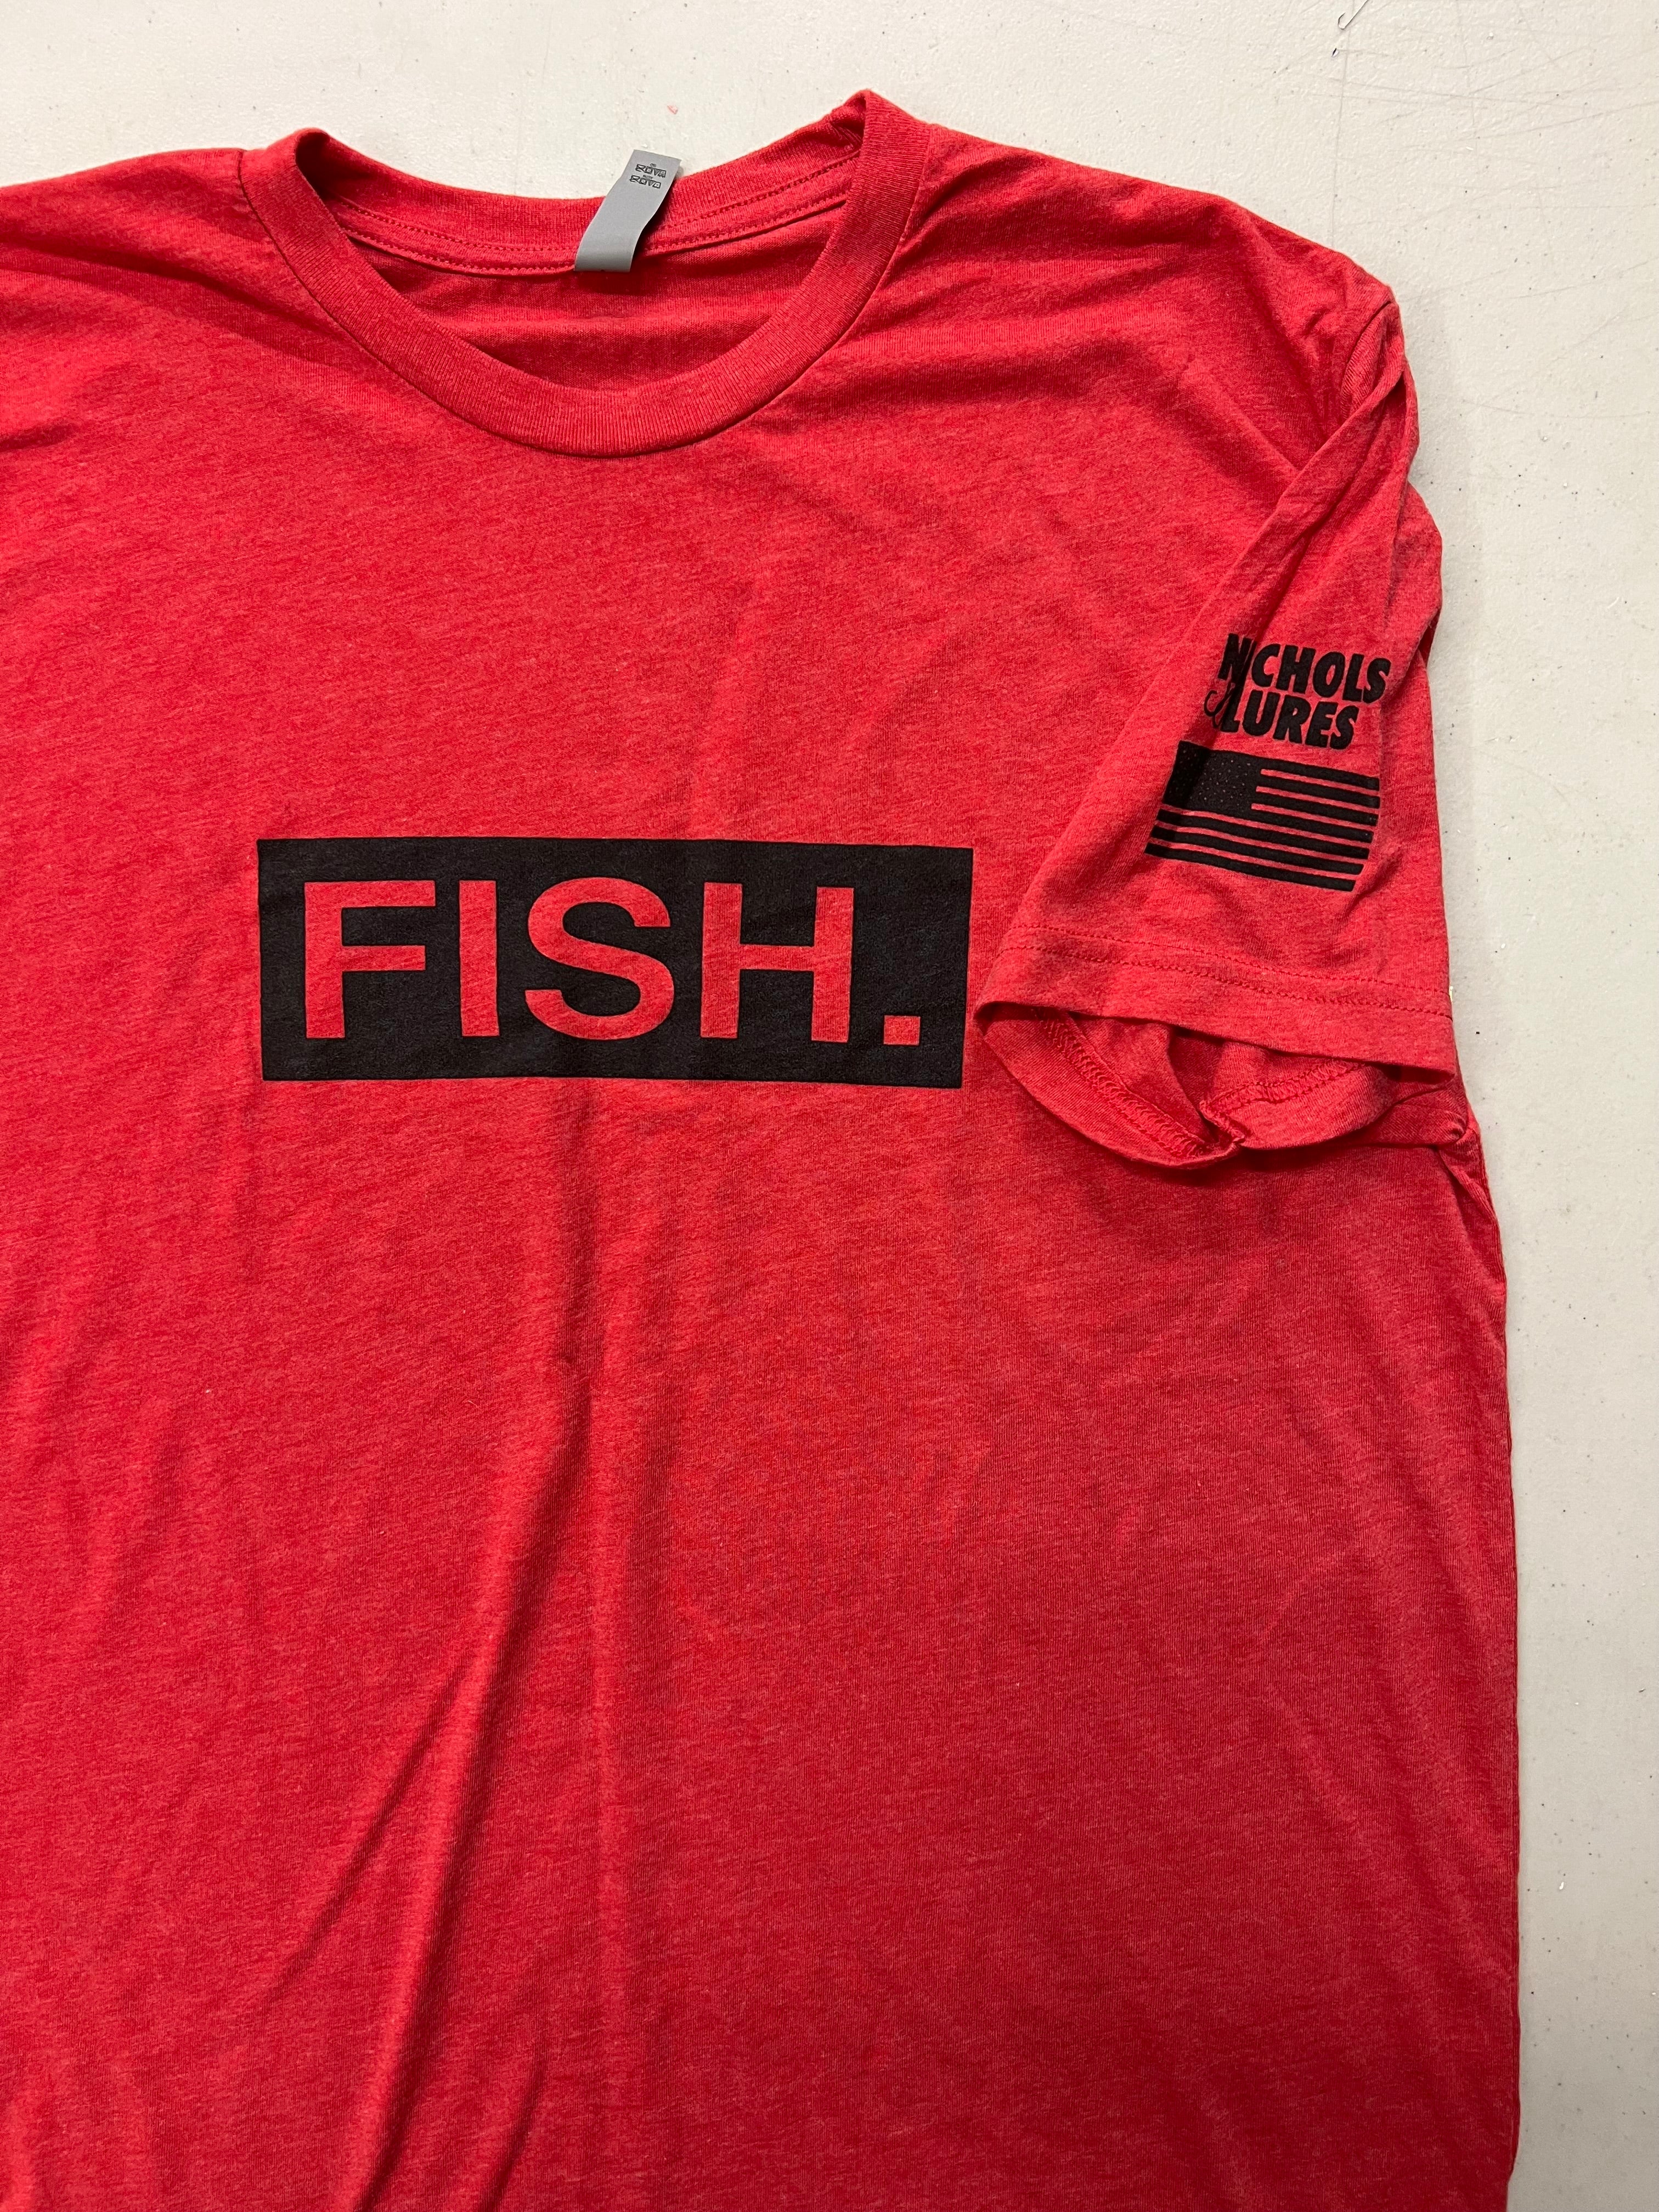 Lure Losers Fishing Club T-Shirt | Fishing